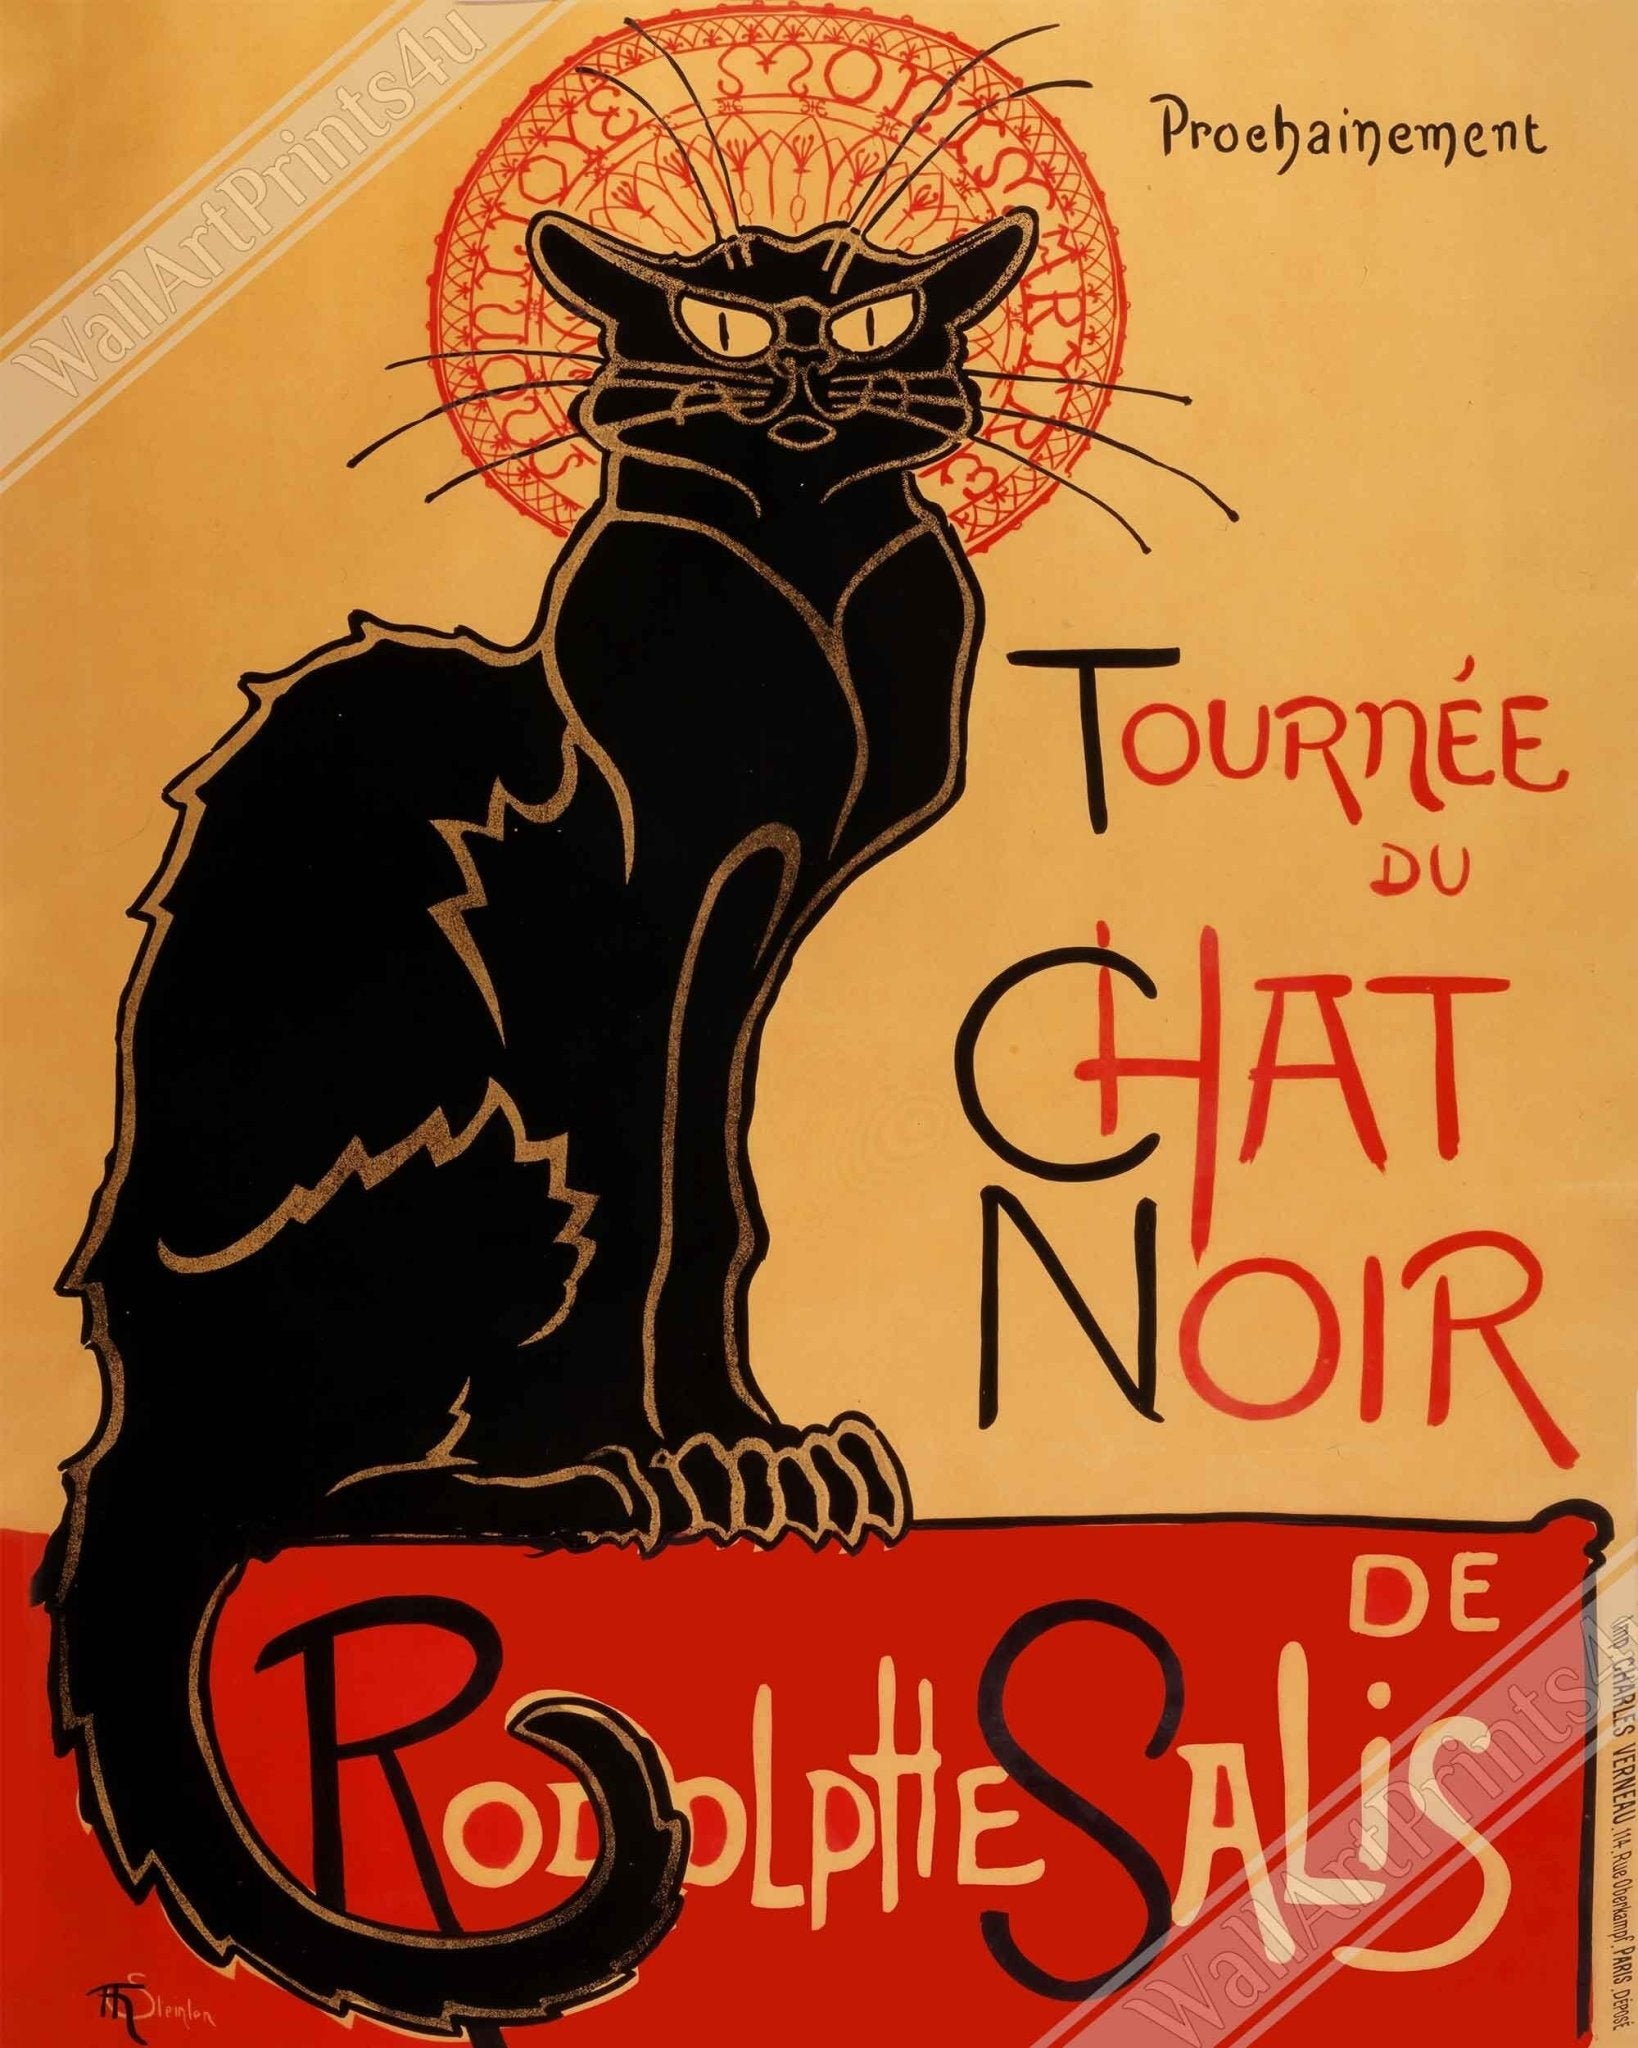 Le Chat Noir Canvas Print - Tournee Du Chat Noir - Le Chat Noir Cat Canvas - Rodolp[He Salis 1896 - WallArtPrints4U